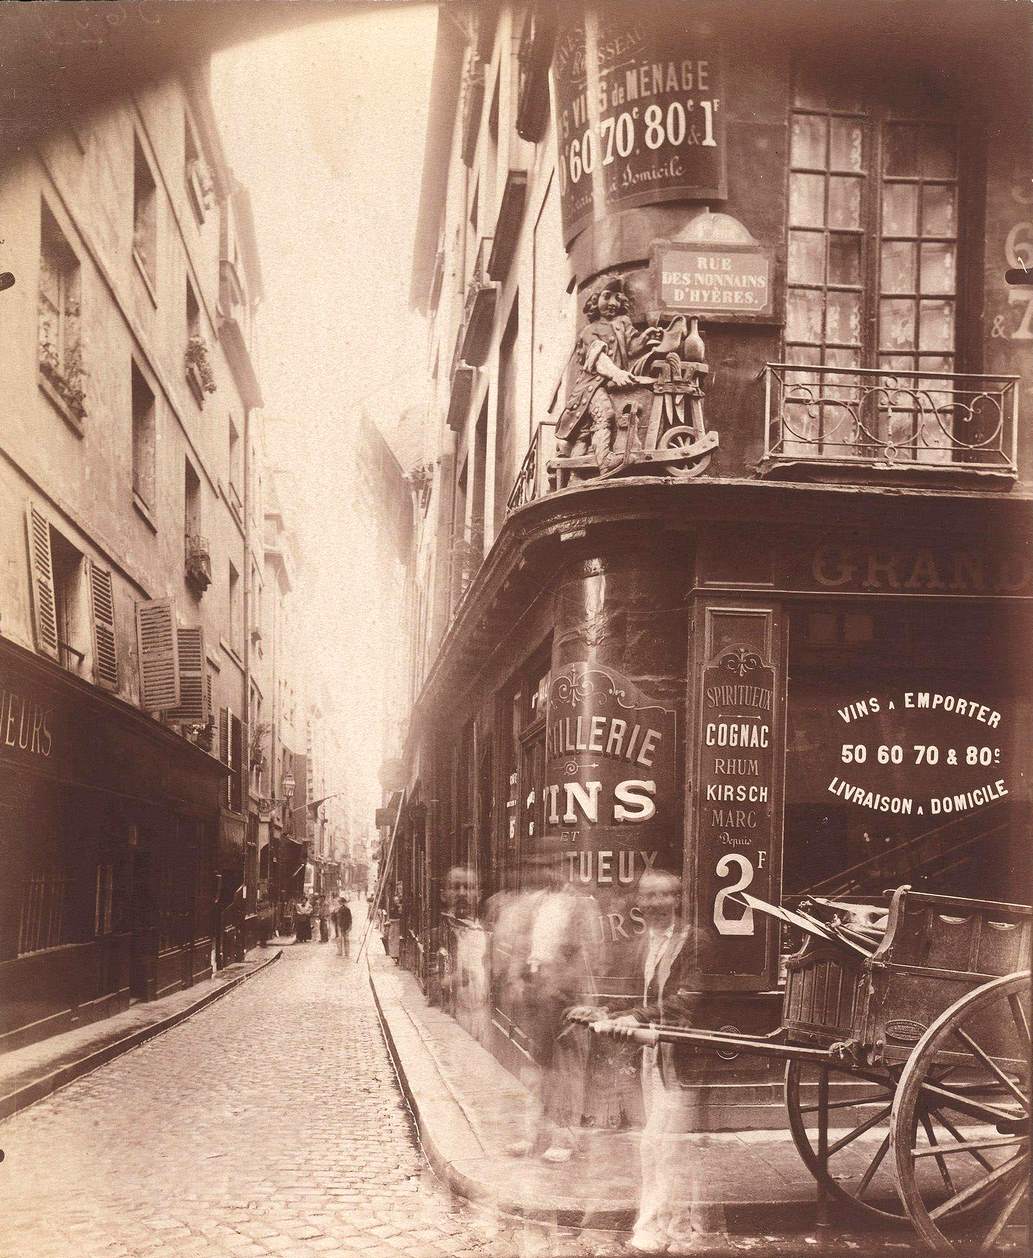 Rue des Nonnains d'Hyeres with a Wine Merchant, 1900